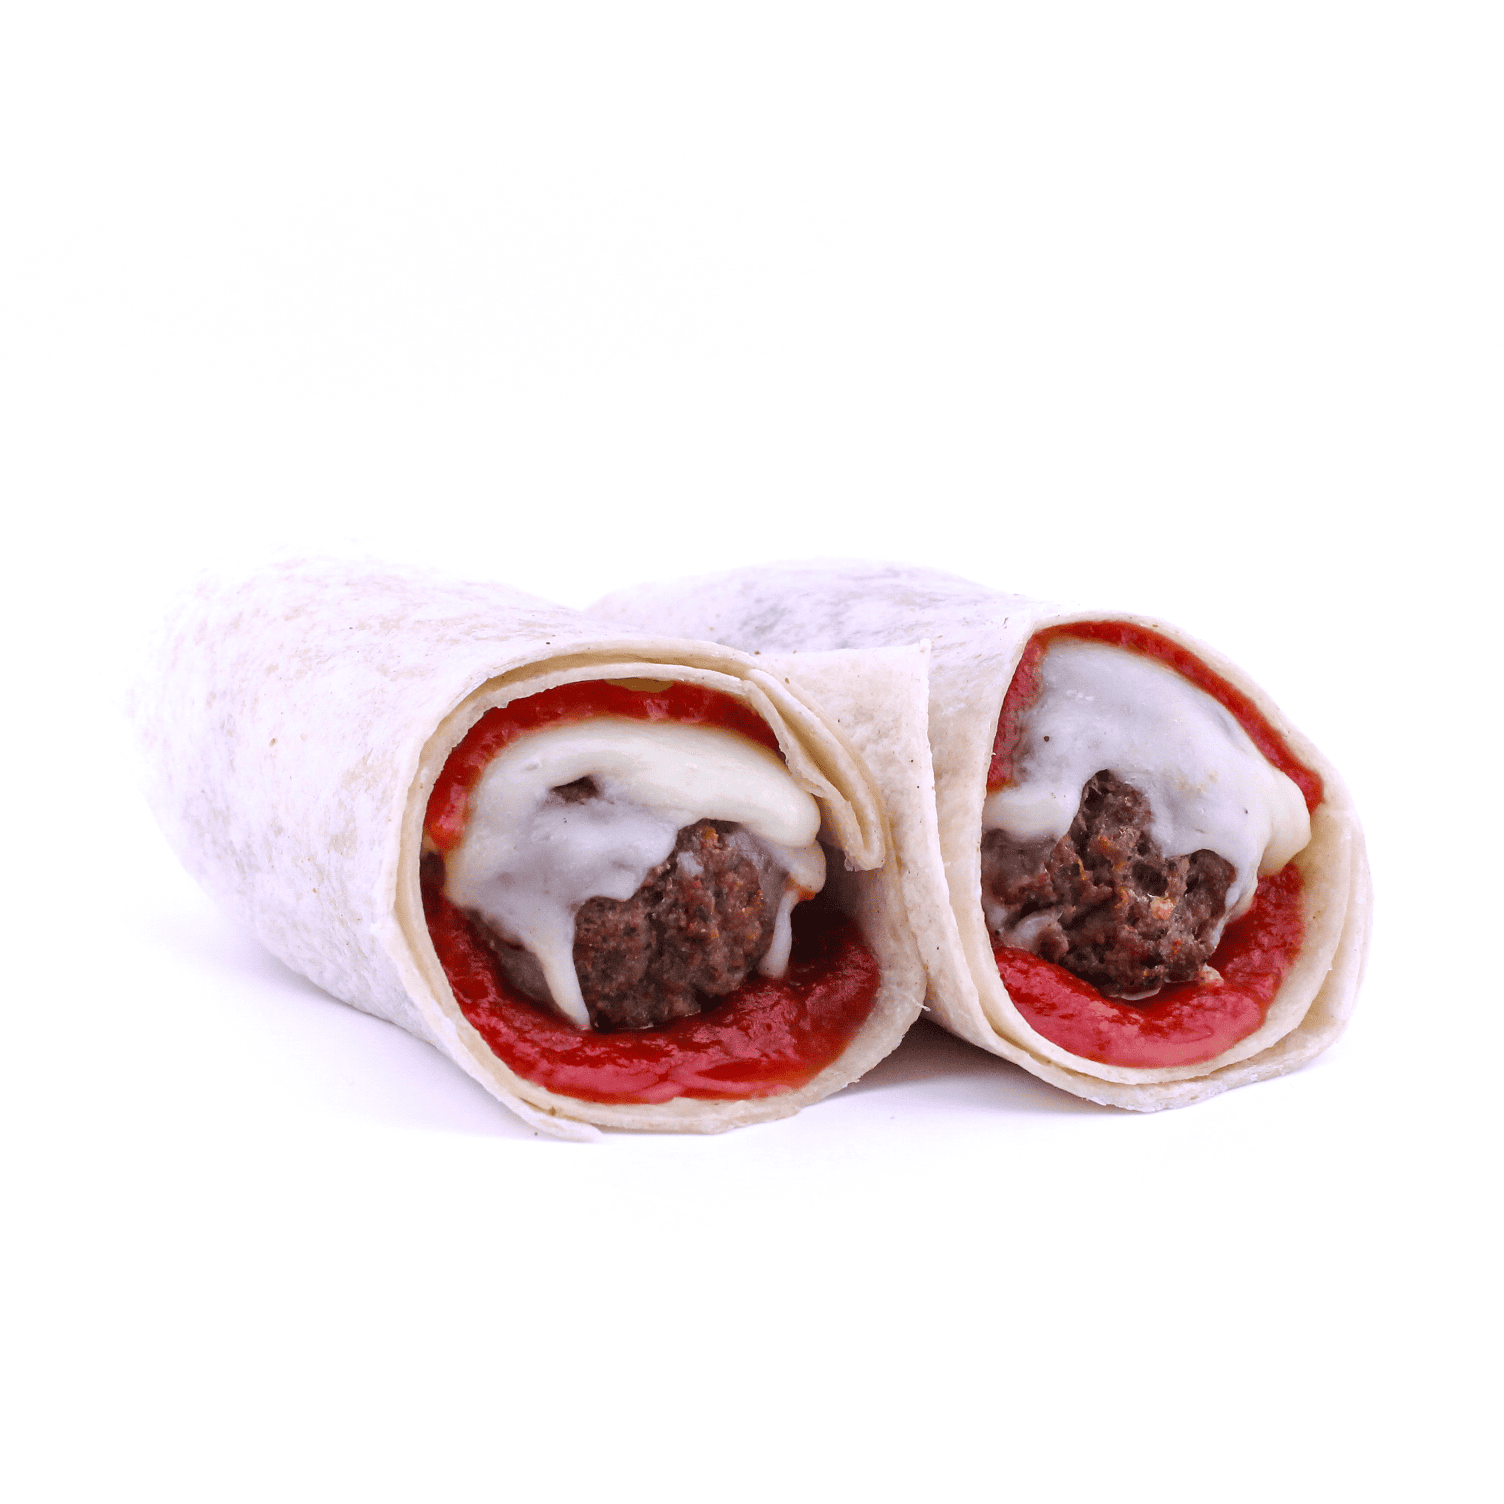 The Goodfella (Hot Wrap) - Beef and pork meatballs, mozzarella cheese, tomato sauce wrapped in a flour tortilla